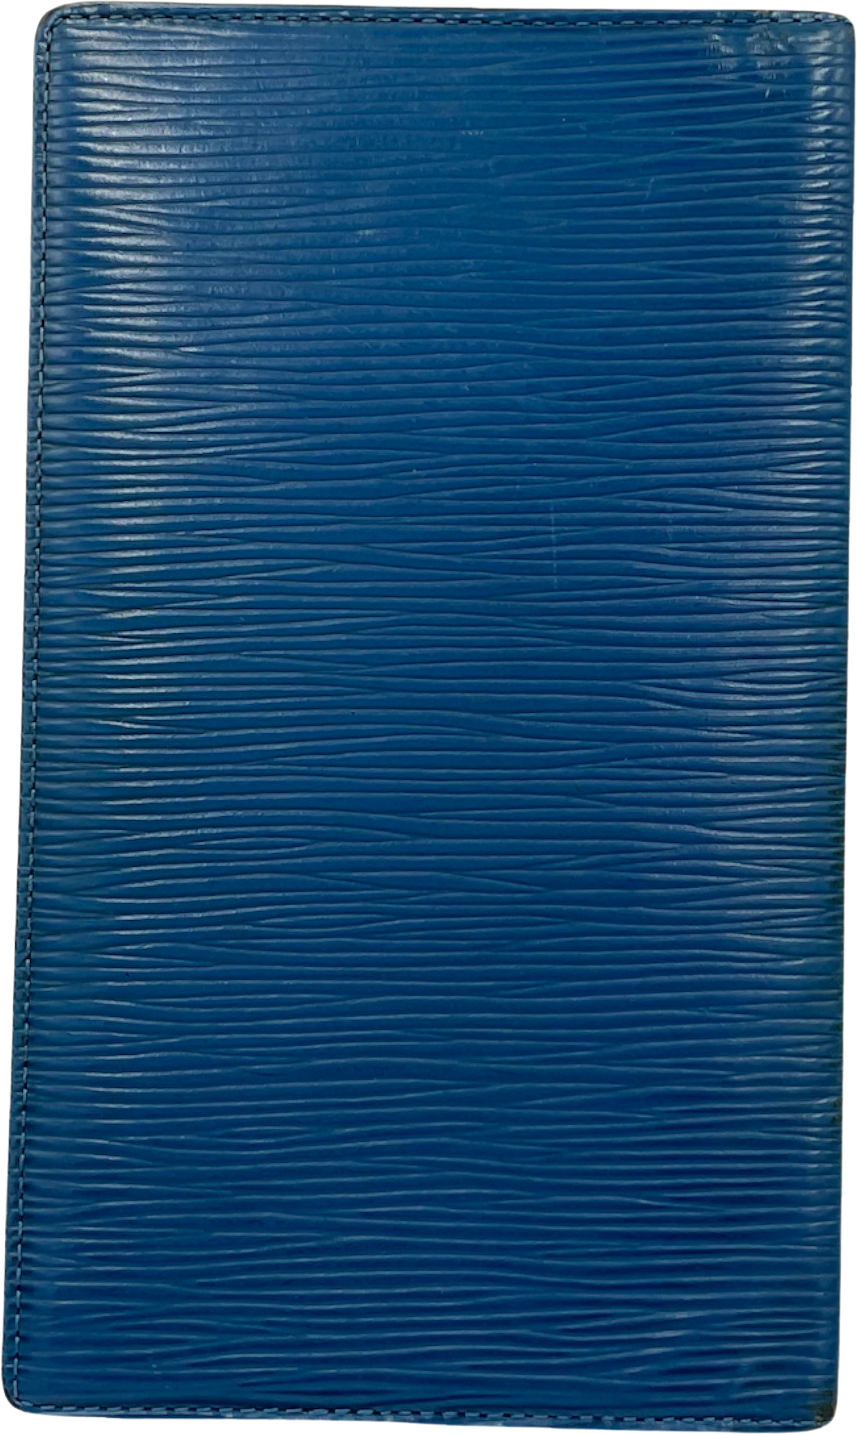 Vintage Blue Epi Leather Wallet By Louis Vuitton